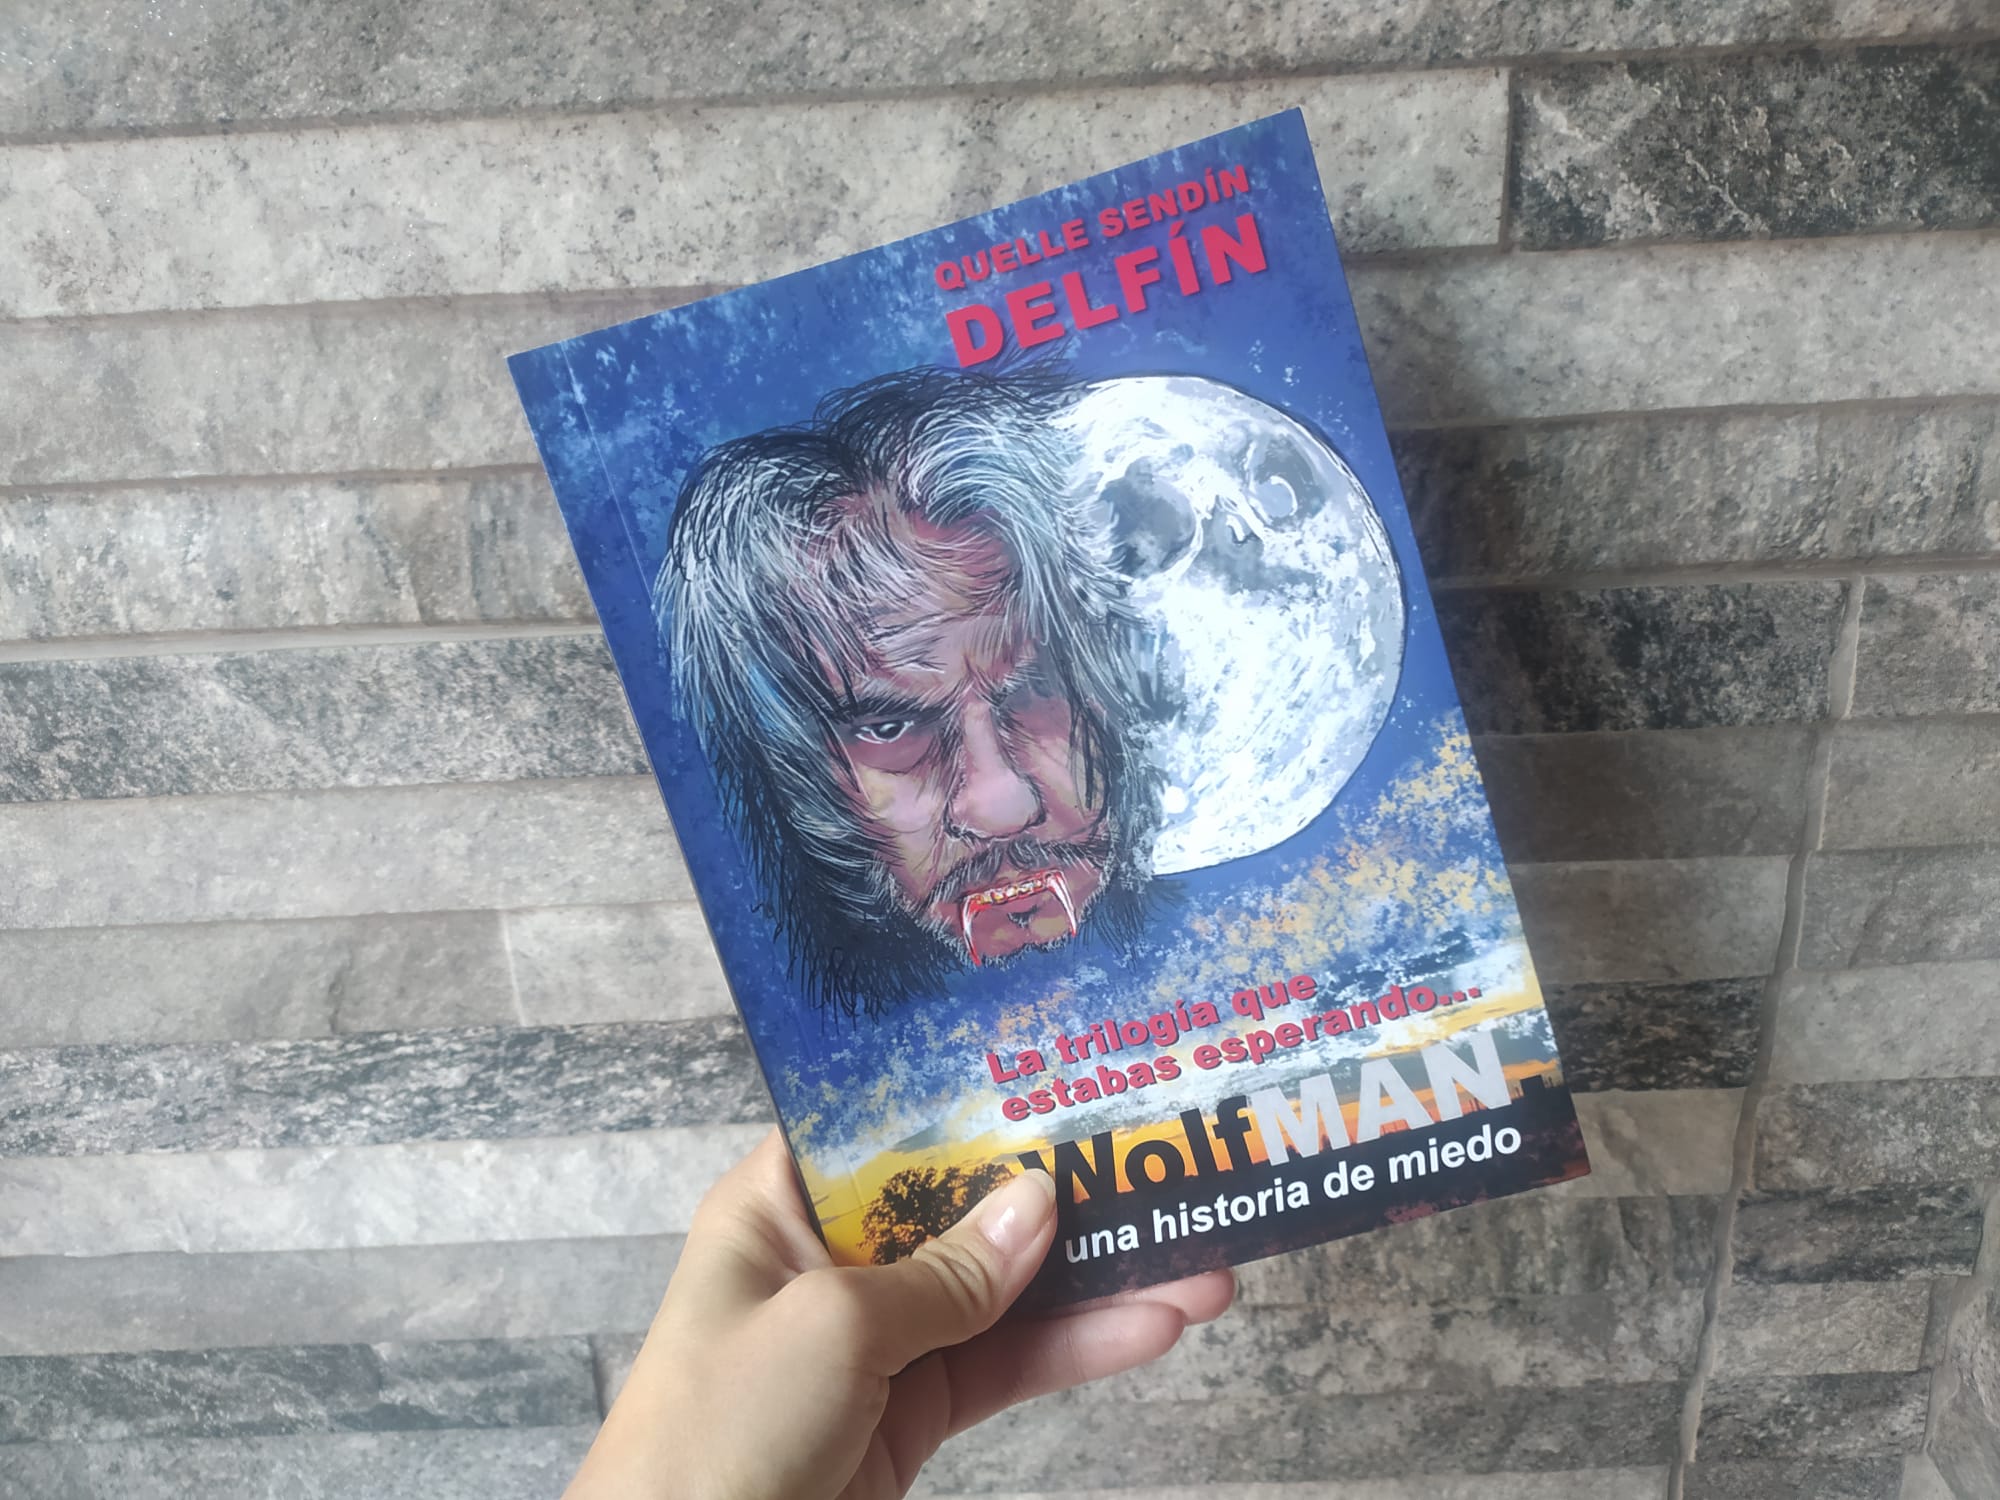 Reseña de “WolfMAN, una historia de miedo”, de  Delfín Quelle Sendín | Por Nuria Bellido